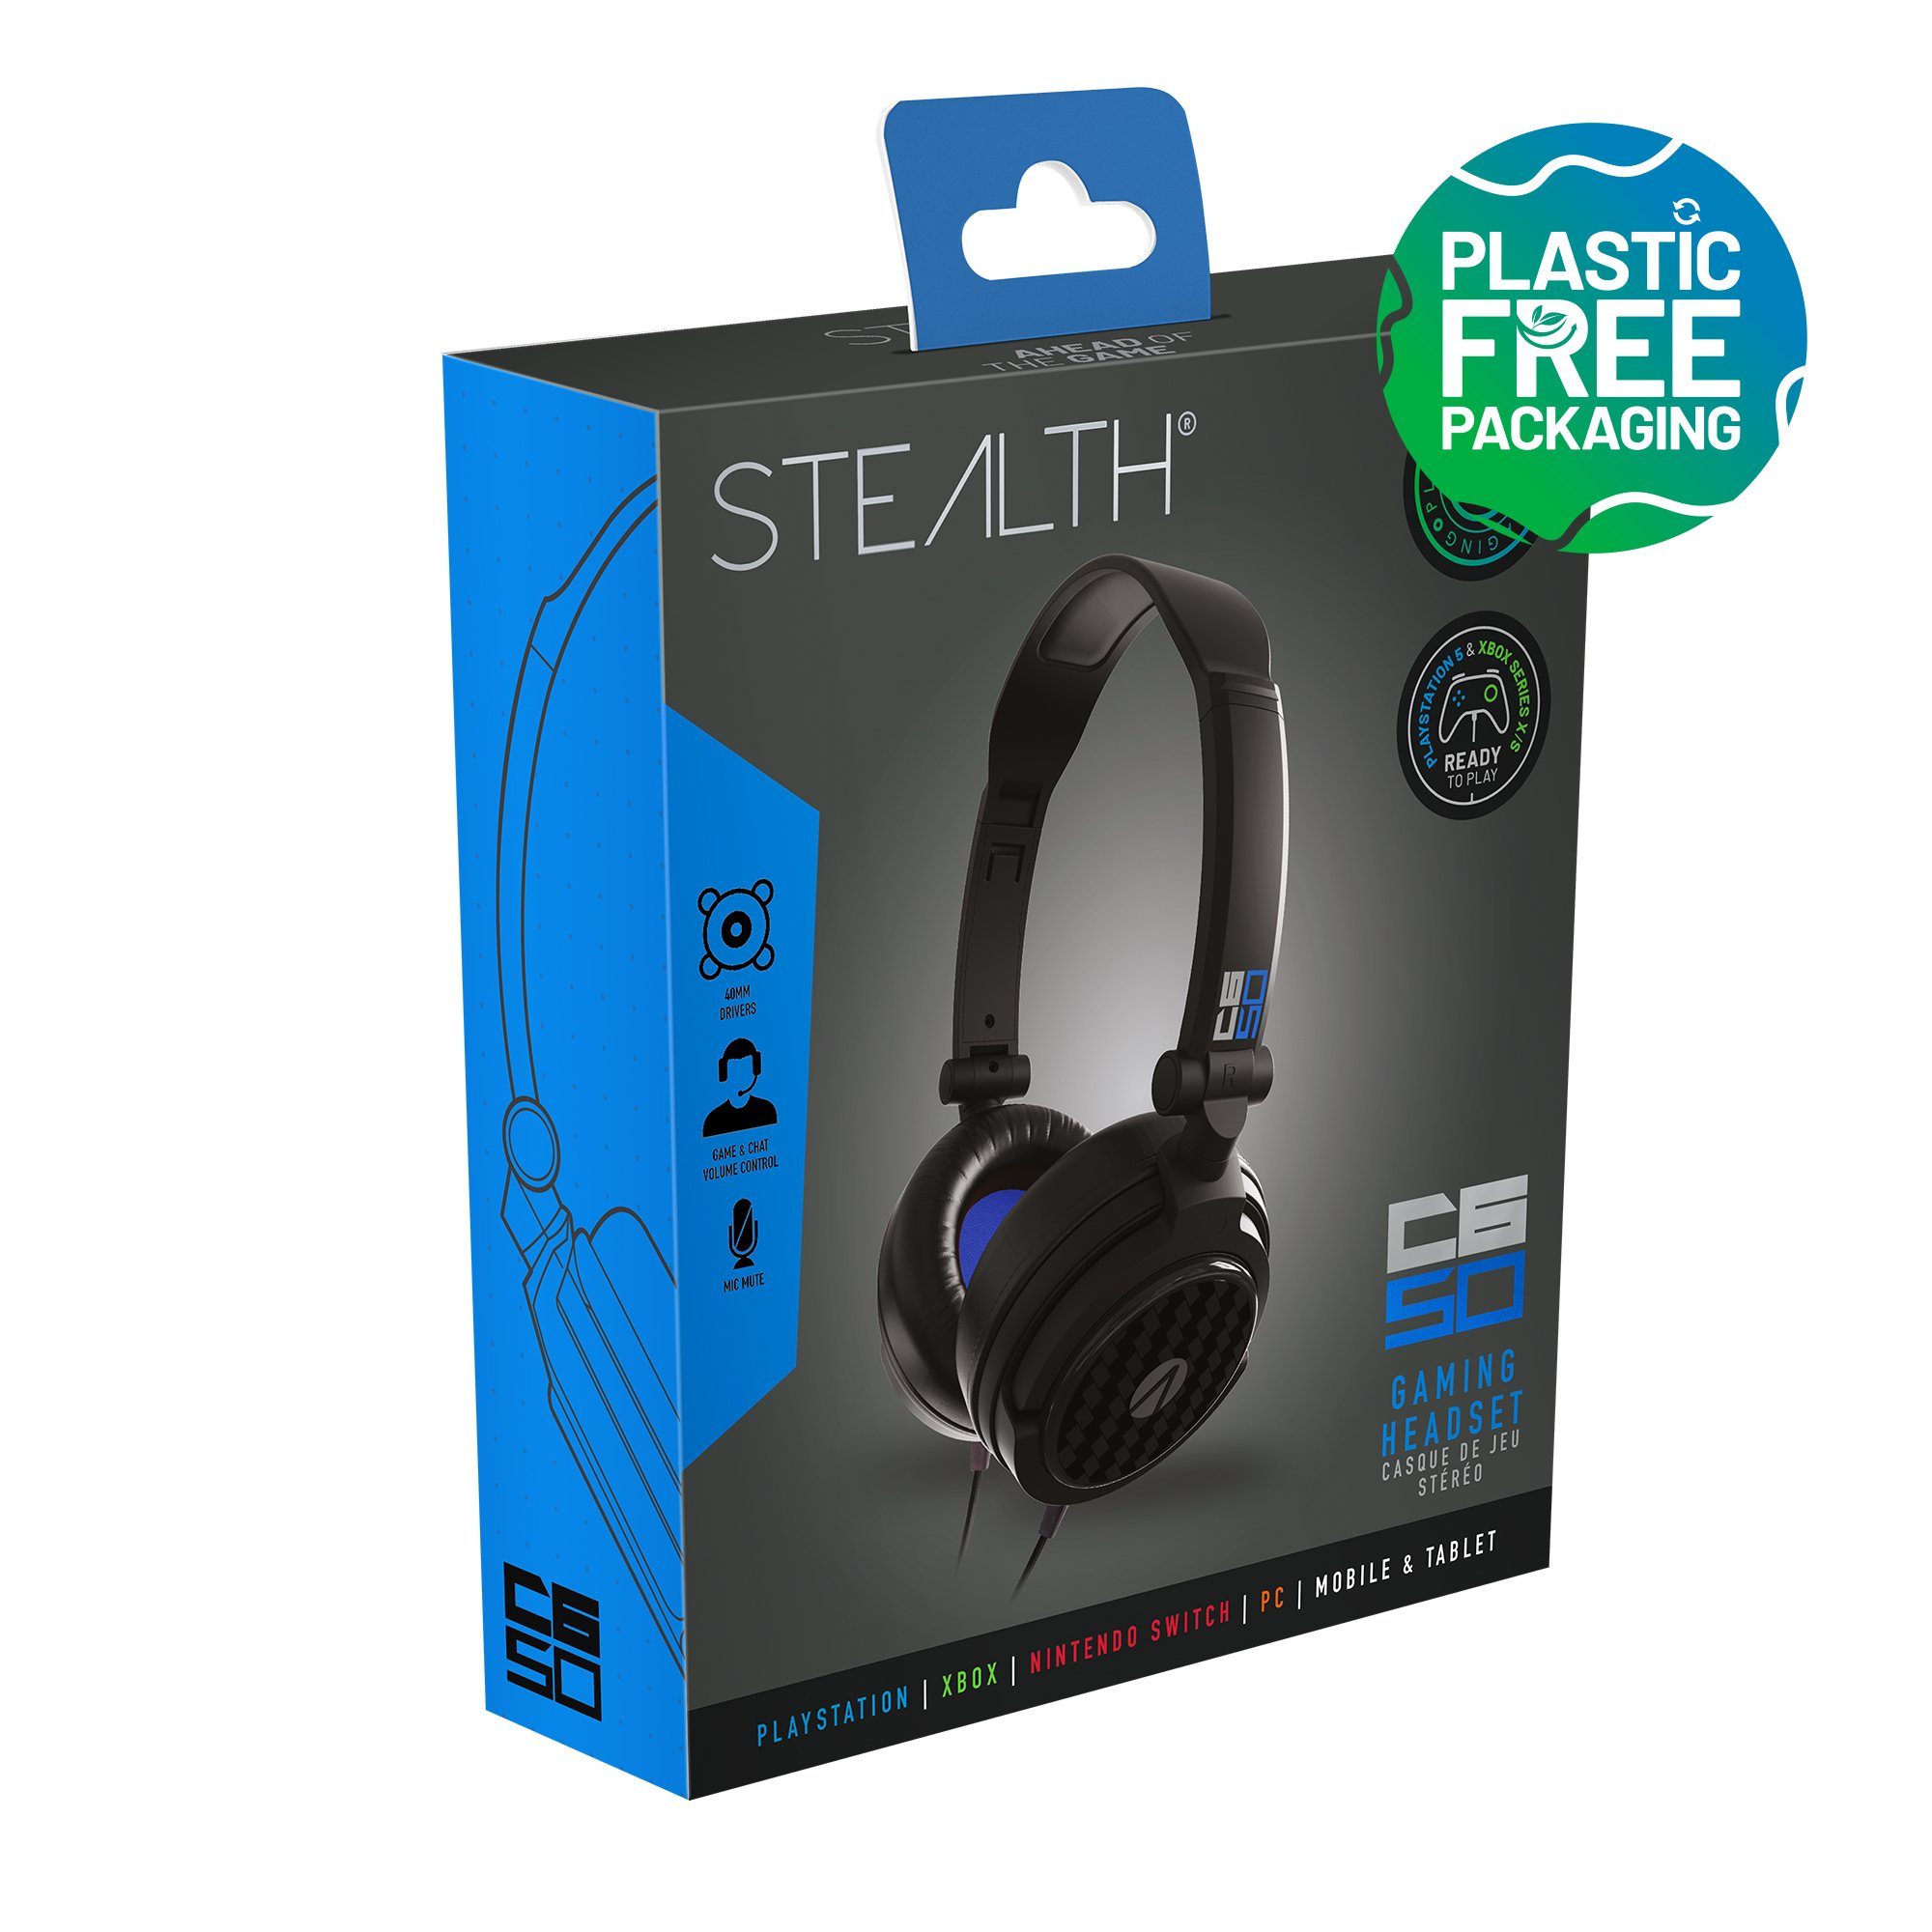 Stealth Multiformat Stereo Verpackung) schwarz (Plastikfreie Gaming C6-50 Stereo-Headset Headset